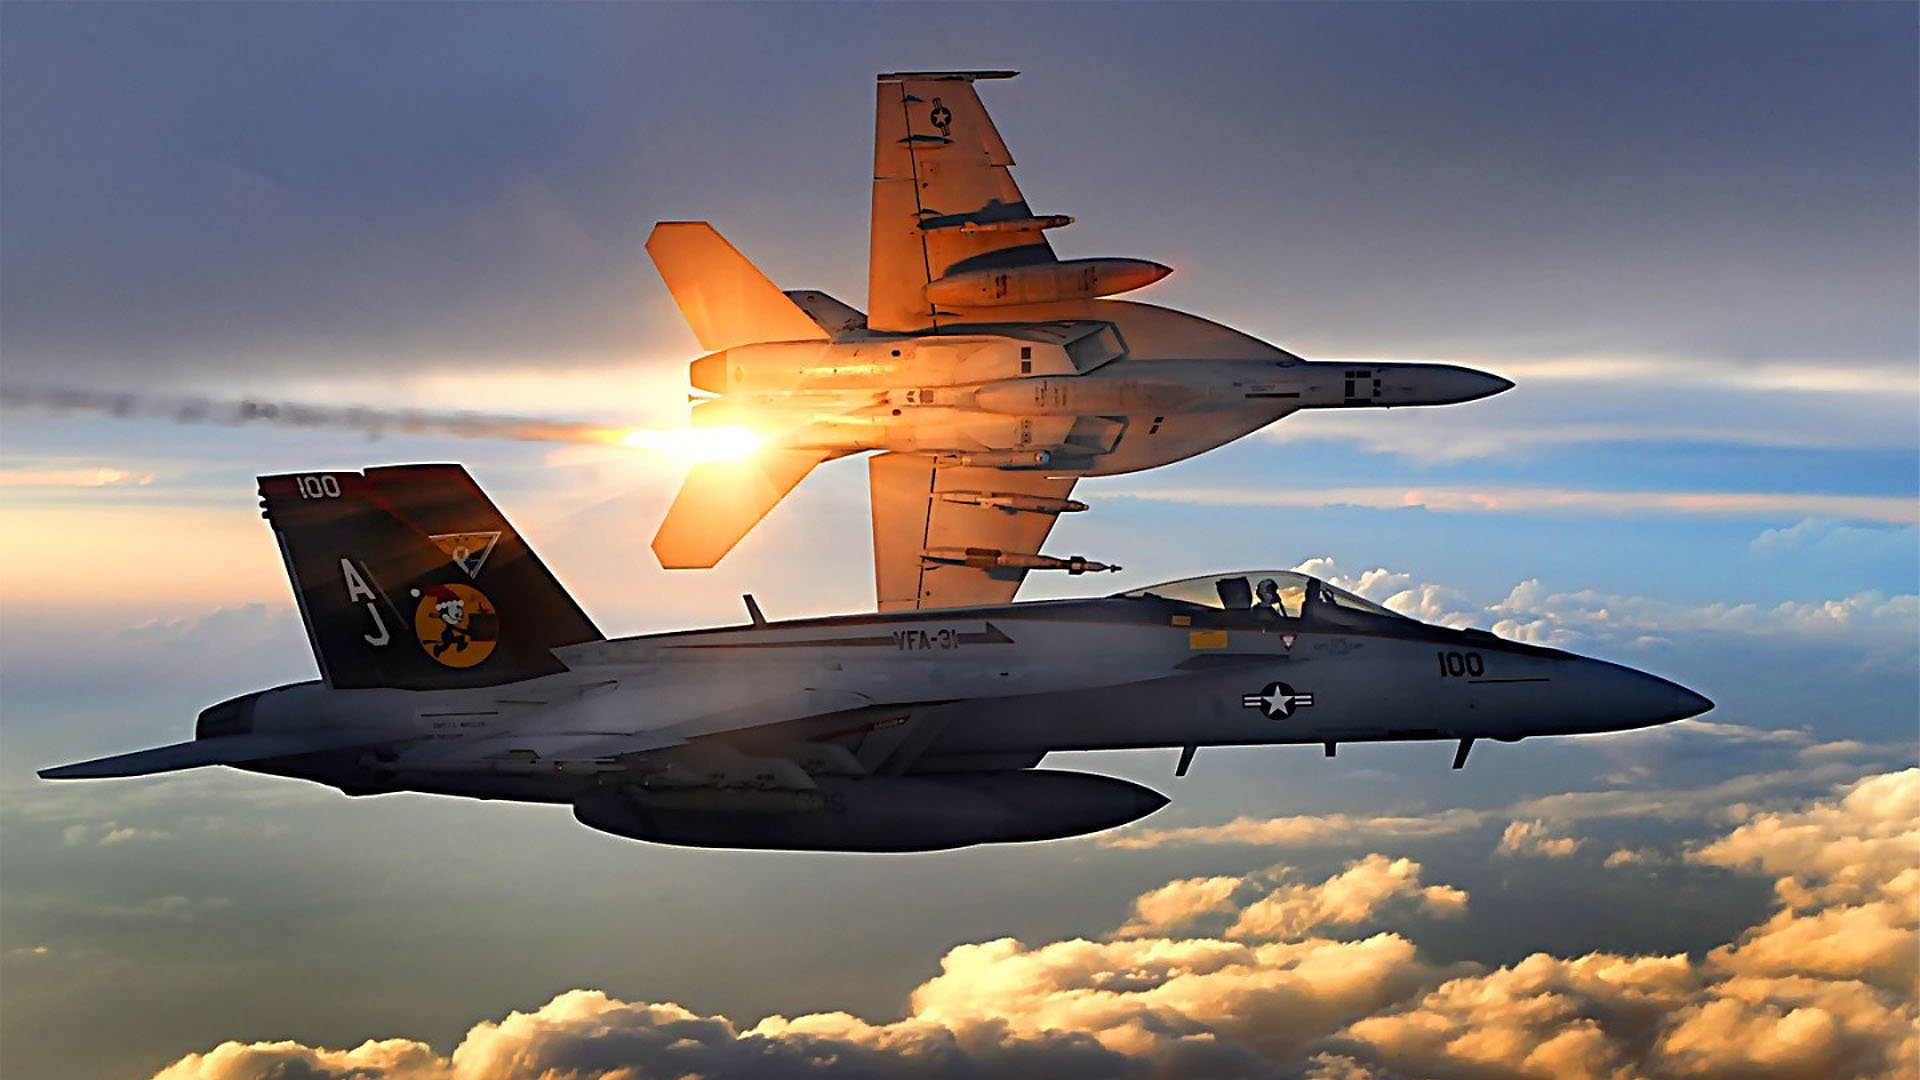 High resolution Boeing F/A-18E/F Super Hornet 1080p wallpaper ID:318676 for desktop